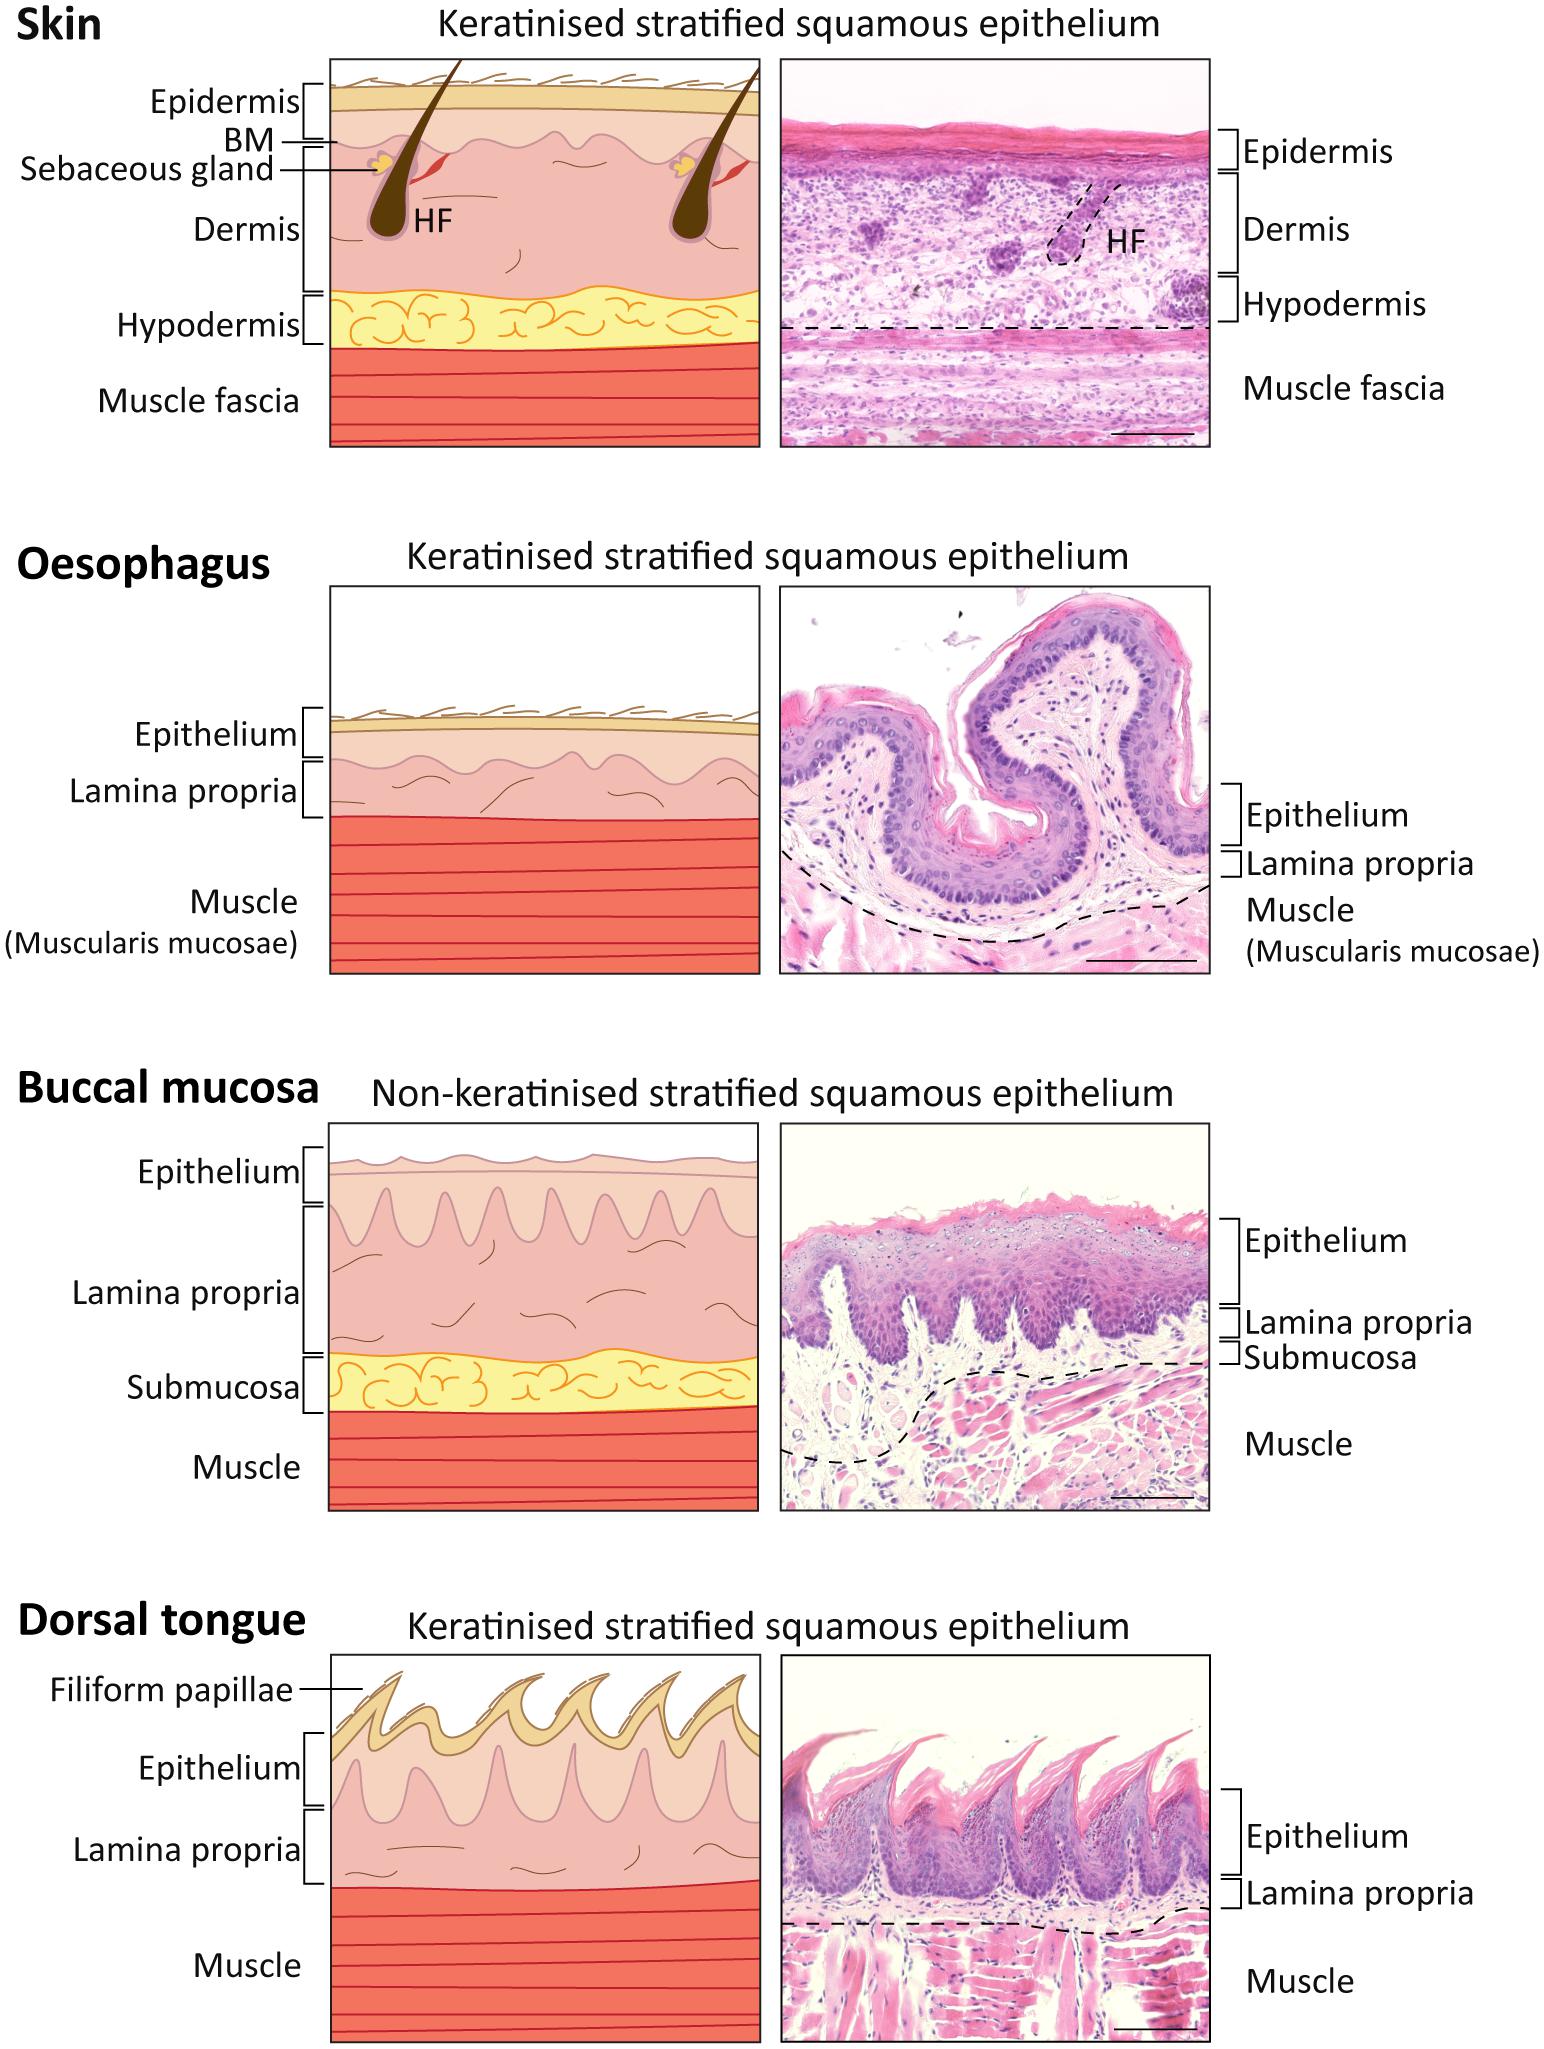 Oral epithelium differentiates into four types of dental epithelium